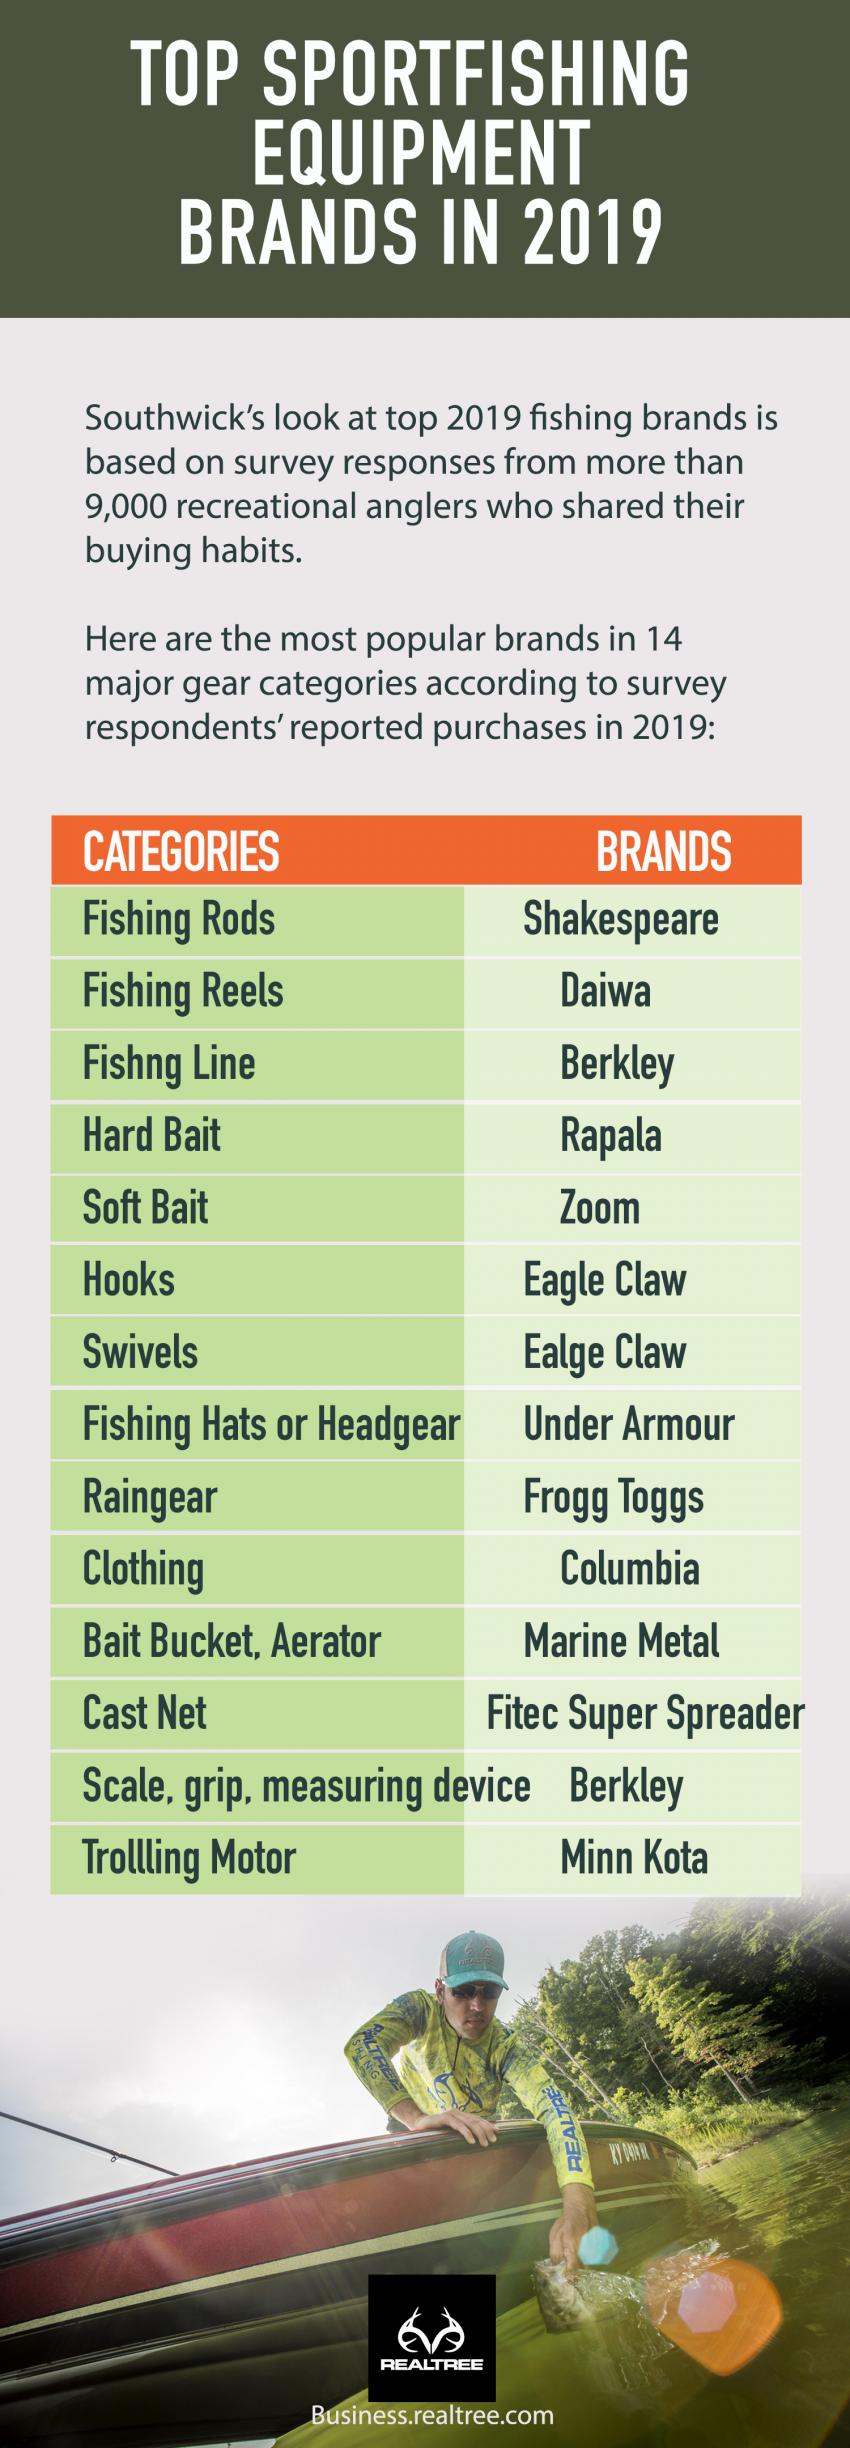 Top Sportfishing Equipment Brands in 2019